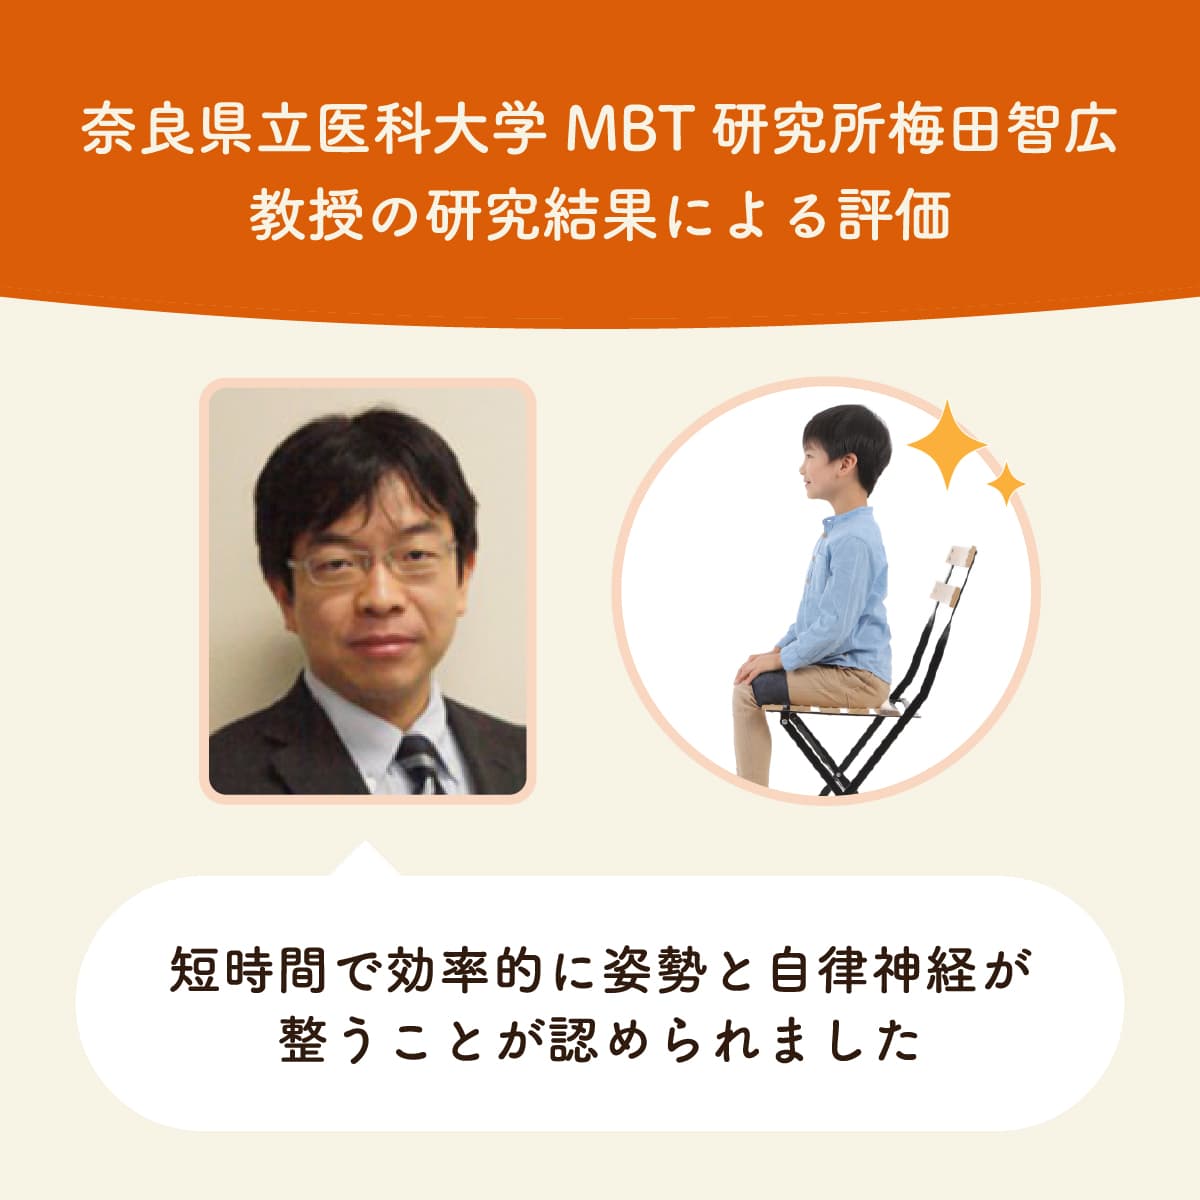 奈良県立医科大学MBT研究所梅田智広教授により姿勢と自律神経が短時間で同時に整うことが医学的に証明された